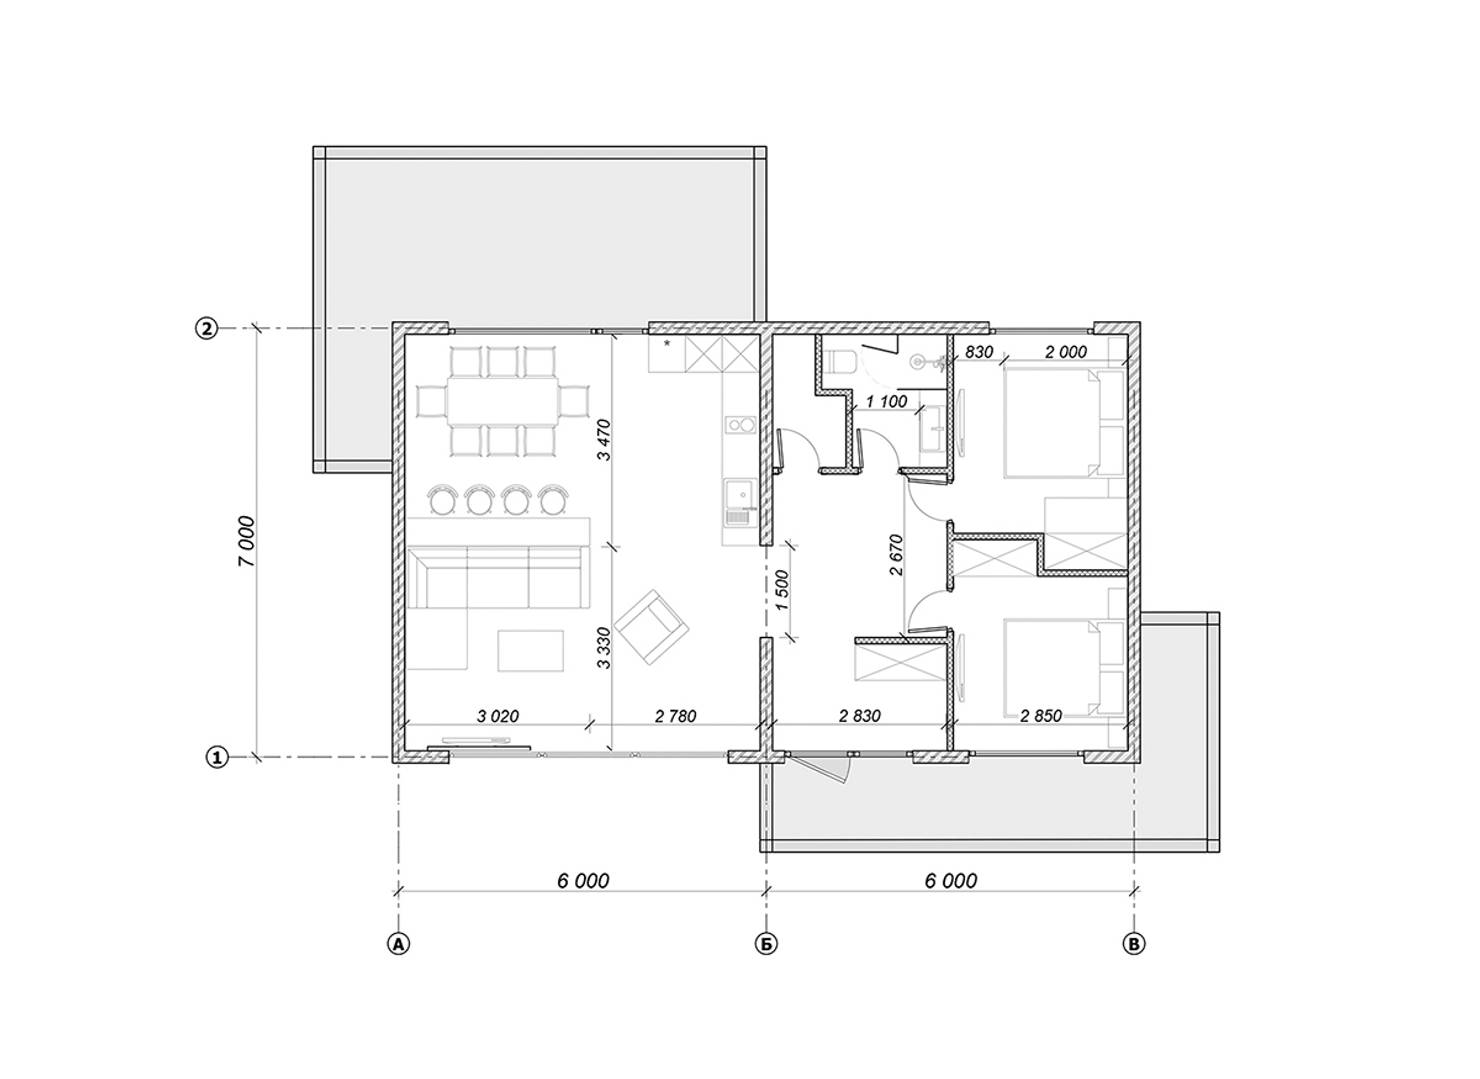 Планировка дома одноэтажного с двумя спальнями 80 кв